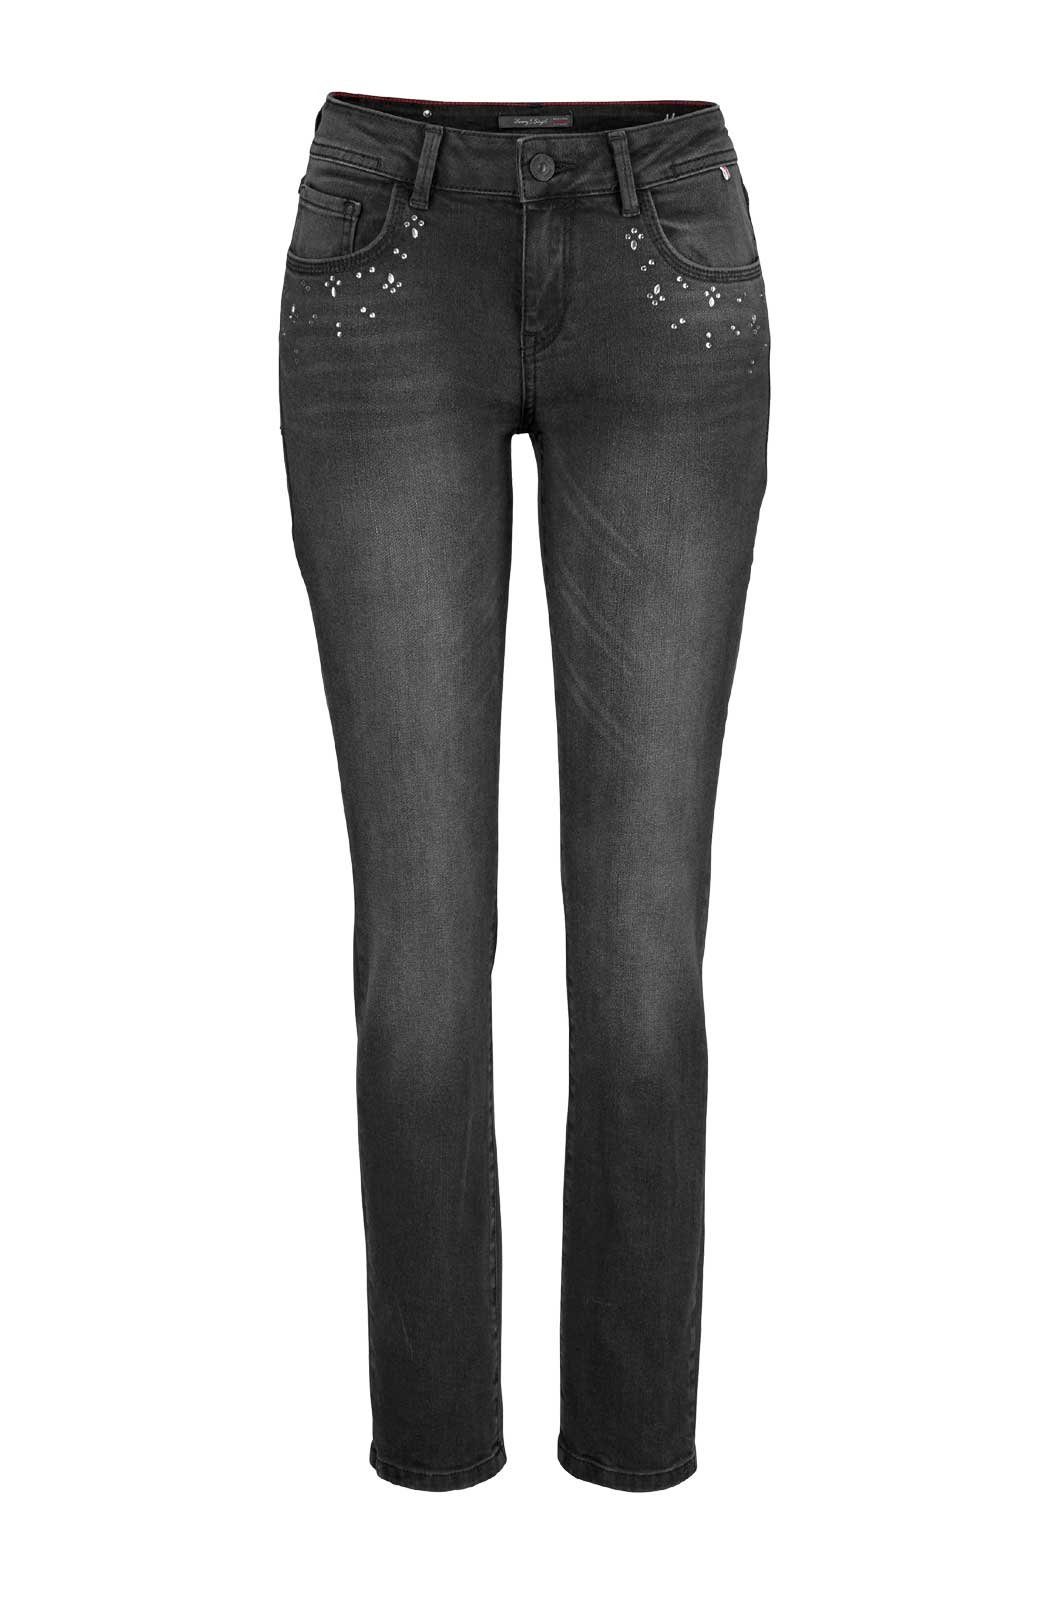 H.I.S Stretch-Jeans »H.i.s. Damen Marken-Stretch-Jeans mit Strass,  schwarz-used, 33 inch« online kaufen | OTTO